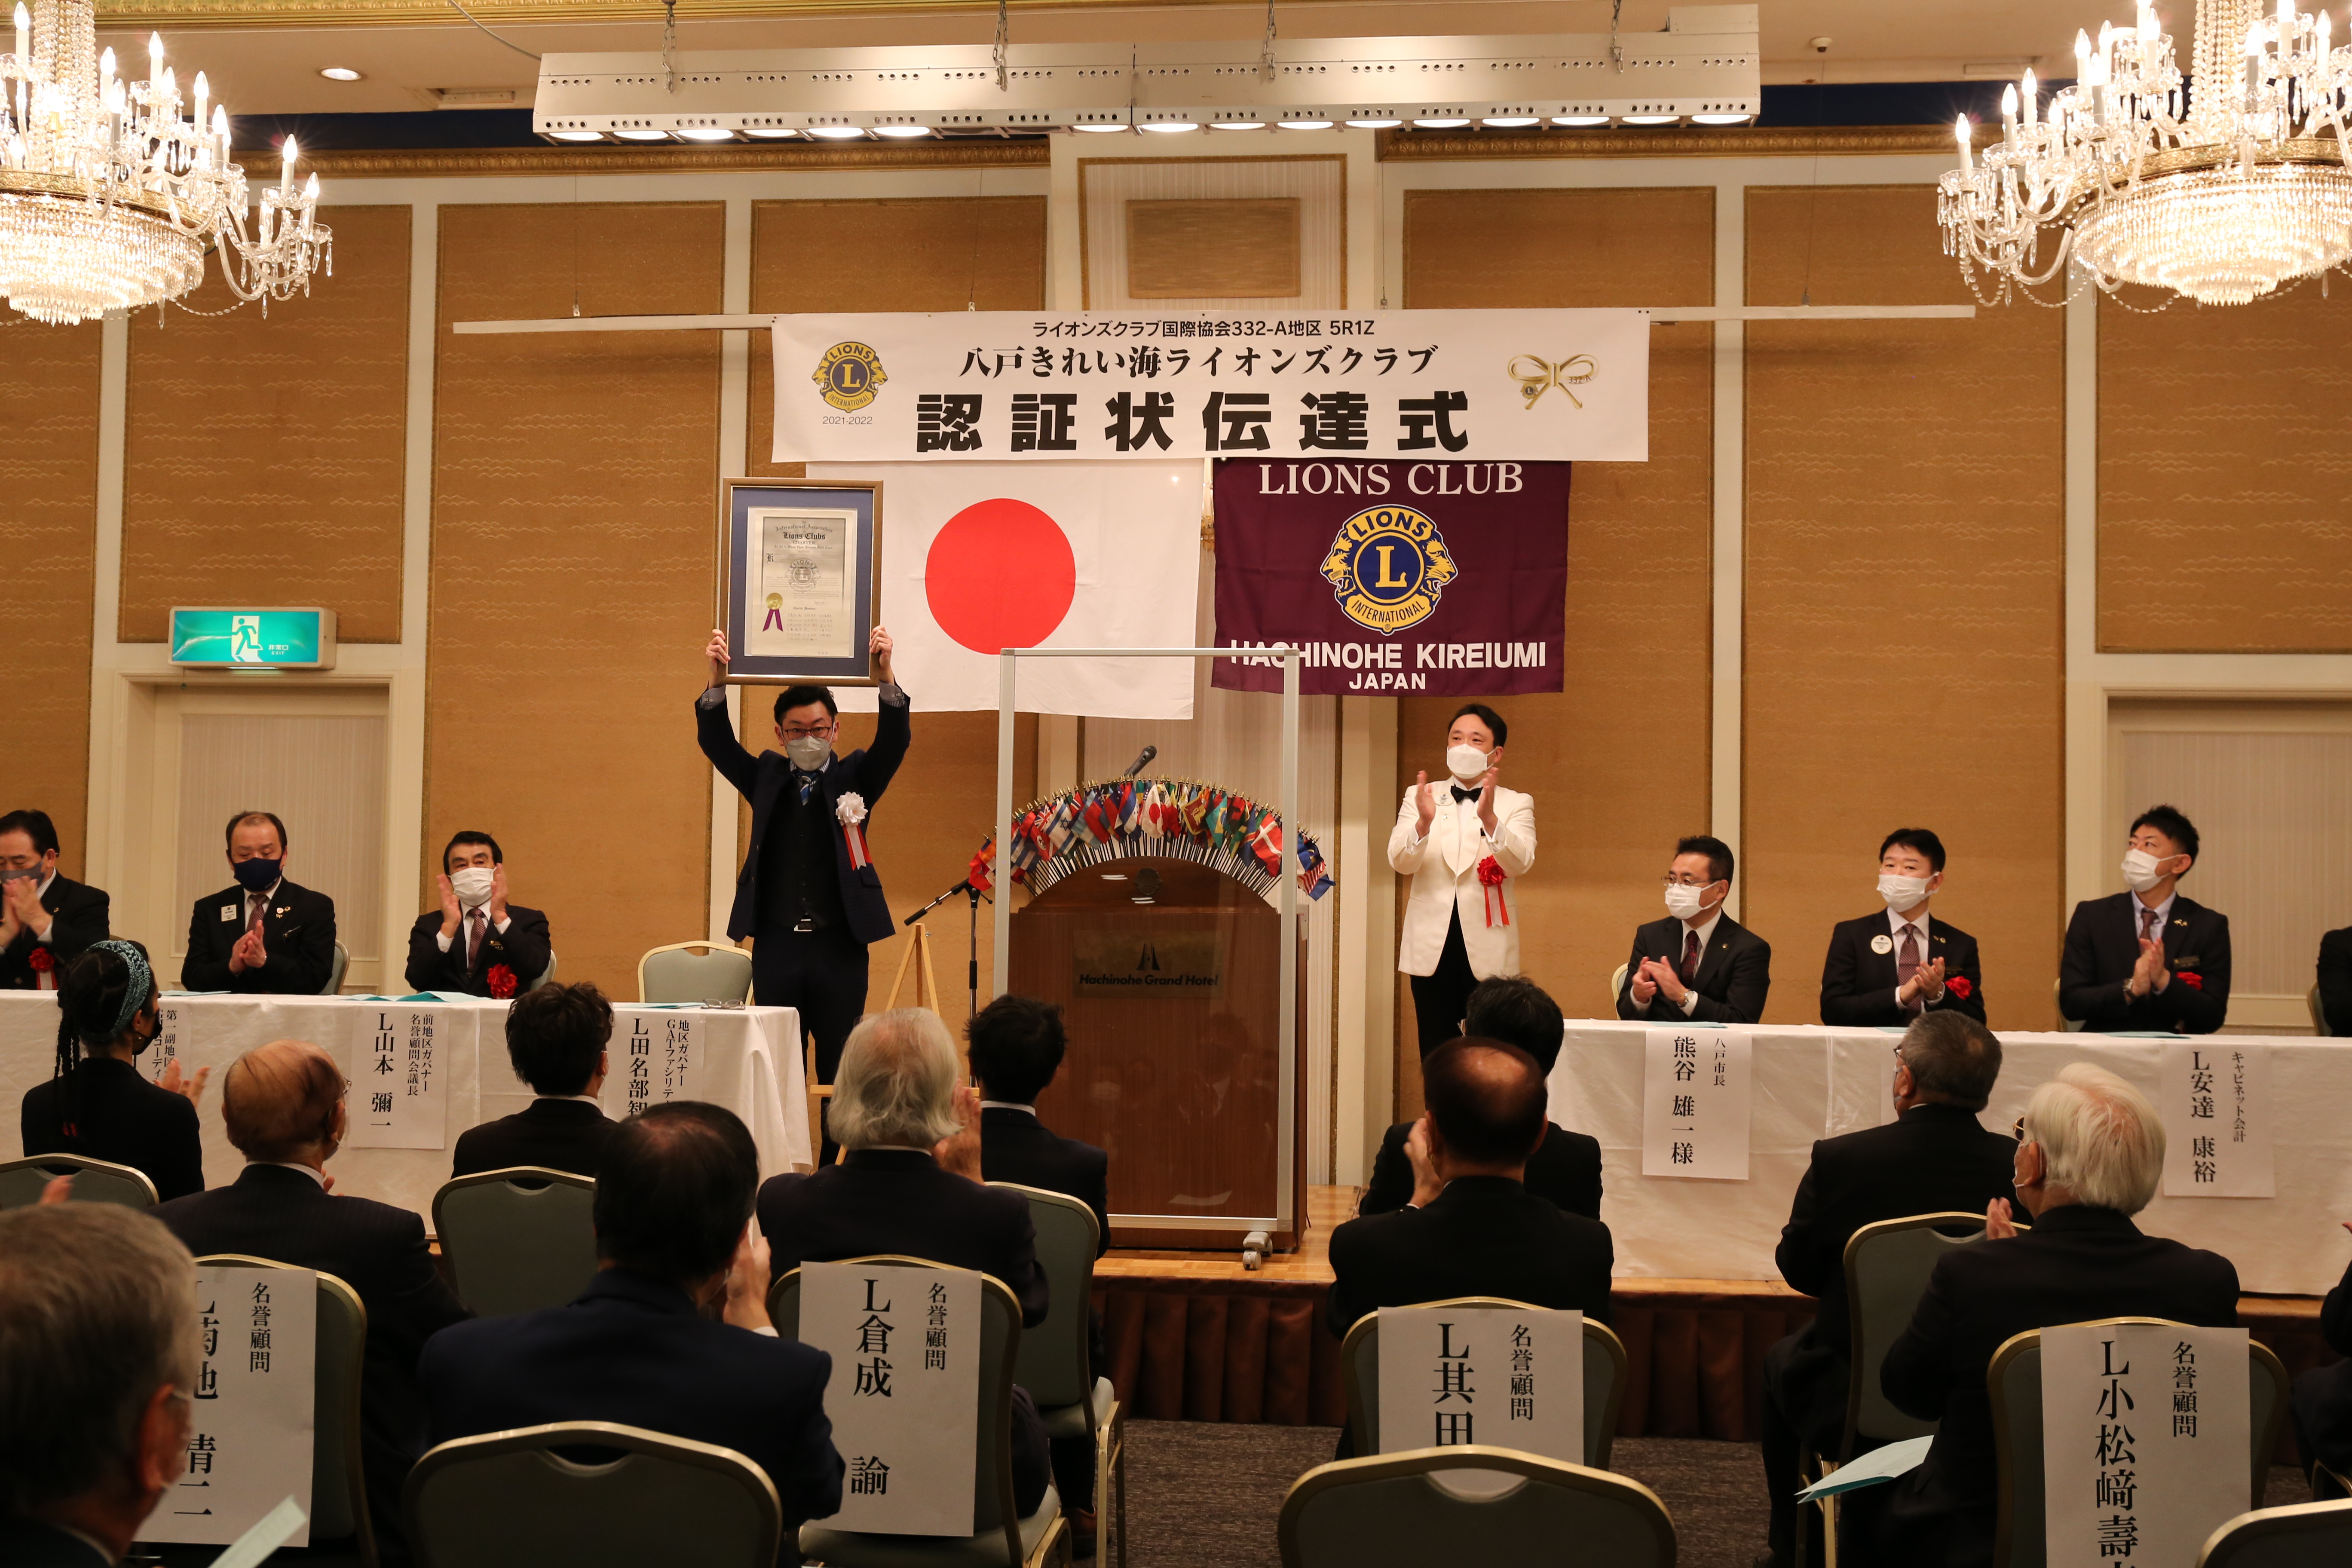 Noche de entrega de la carta constitutiva del Club de Leones de Hachinohe Kireiumi